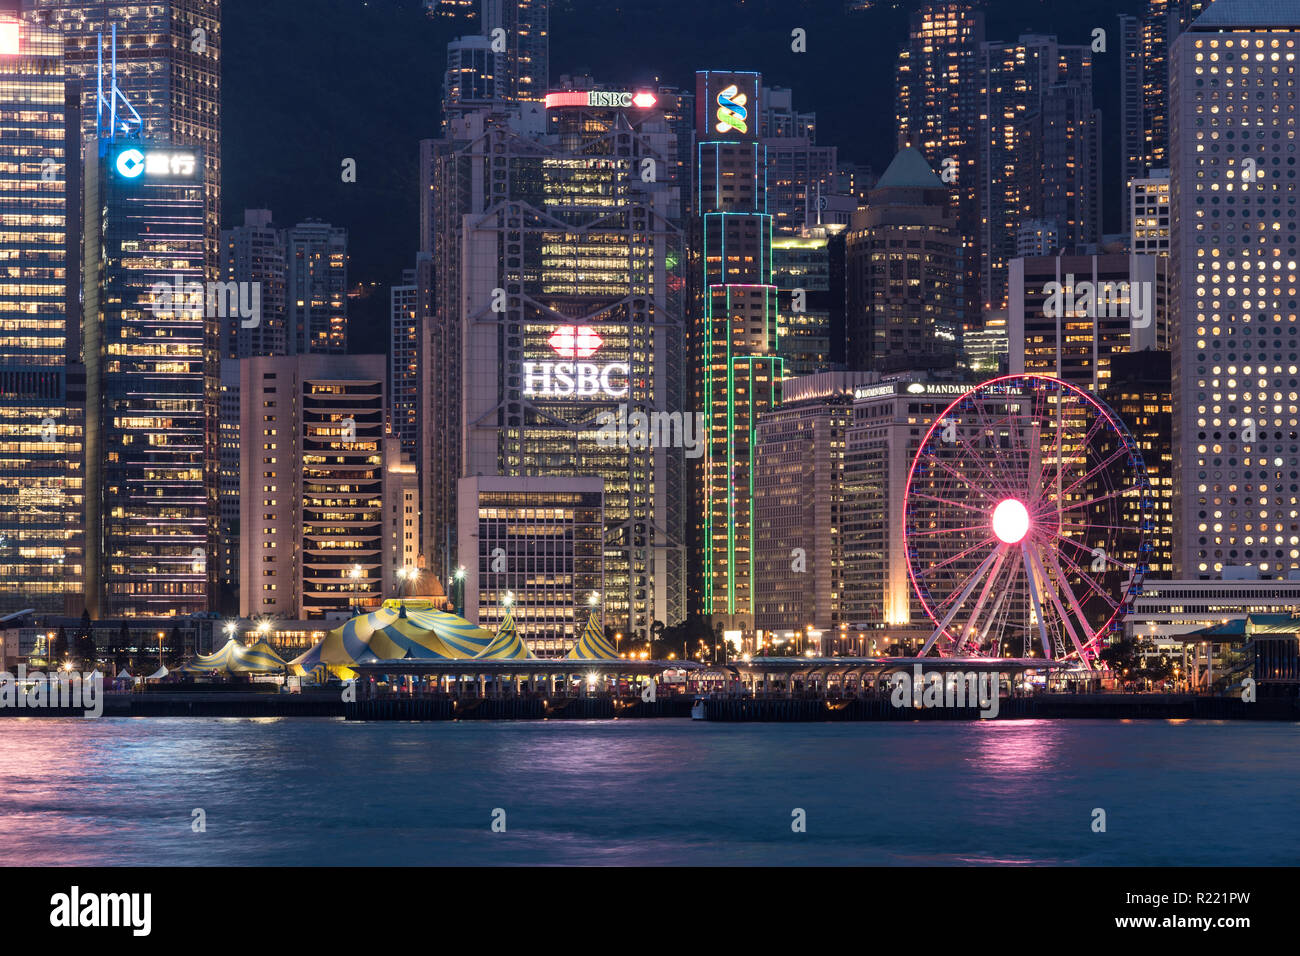 Hong Kong, China - 17. Mai 2018: Eine Nacht Blick auf die berühmte Insel Hong Kong Central Business District von Kowloon über den Victoria Harbour. Stockfoto